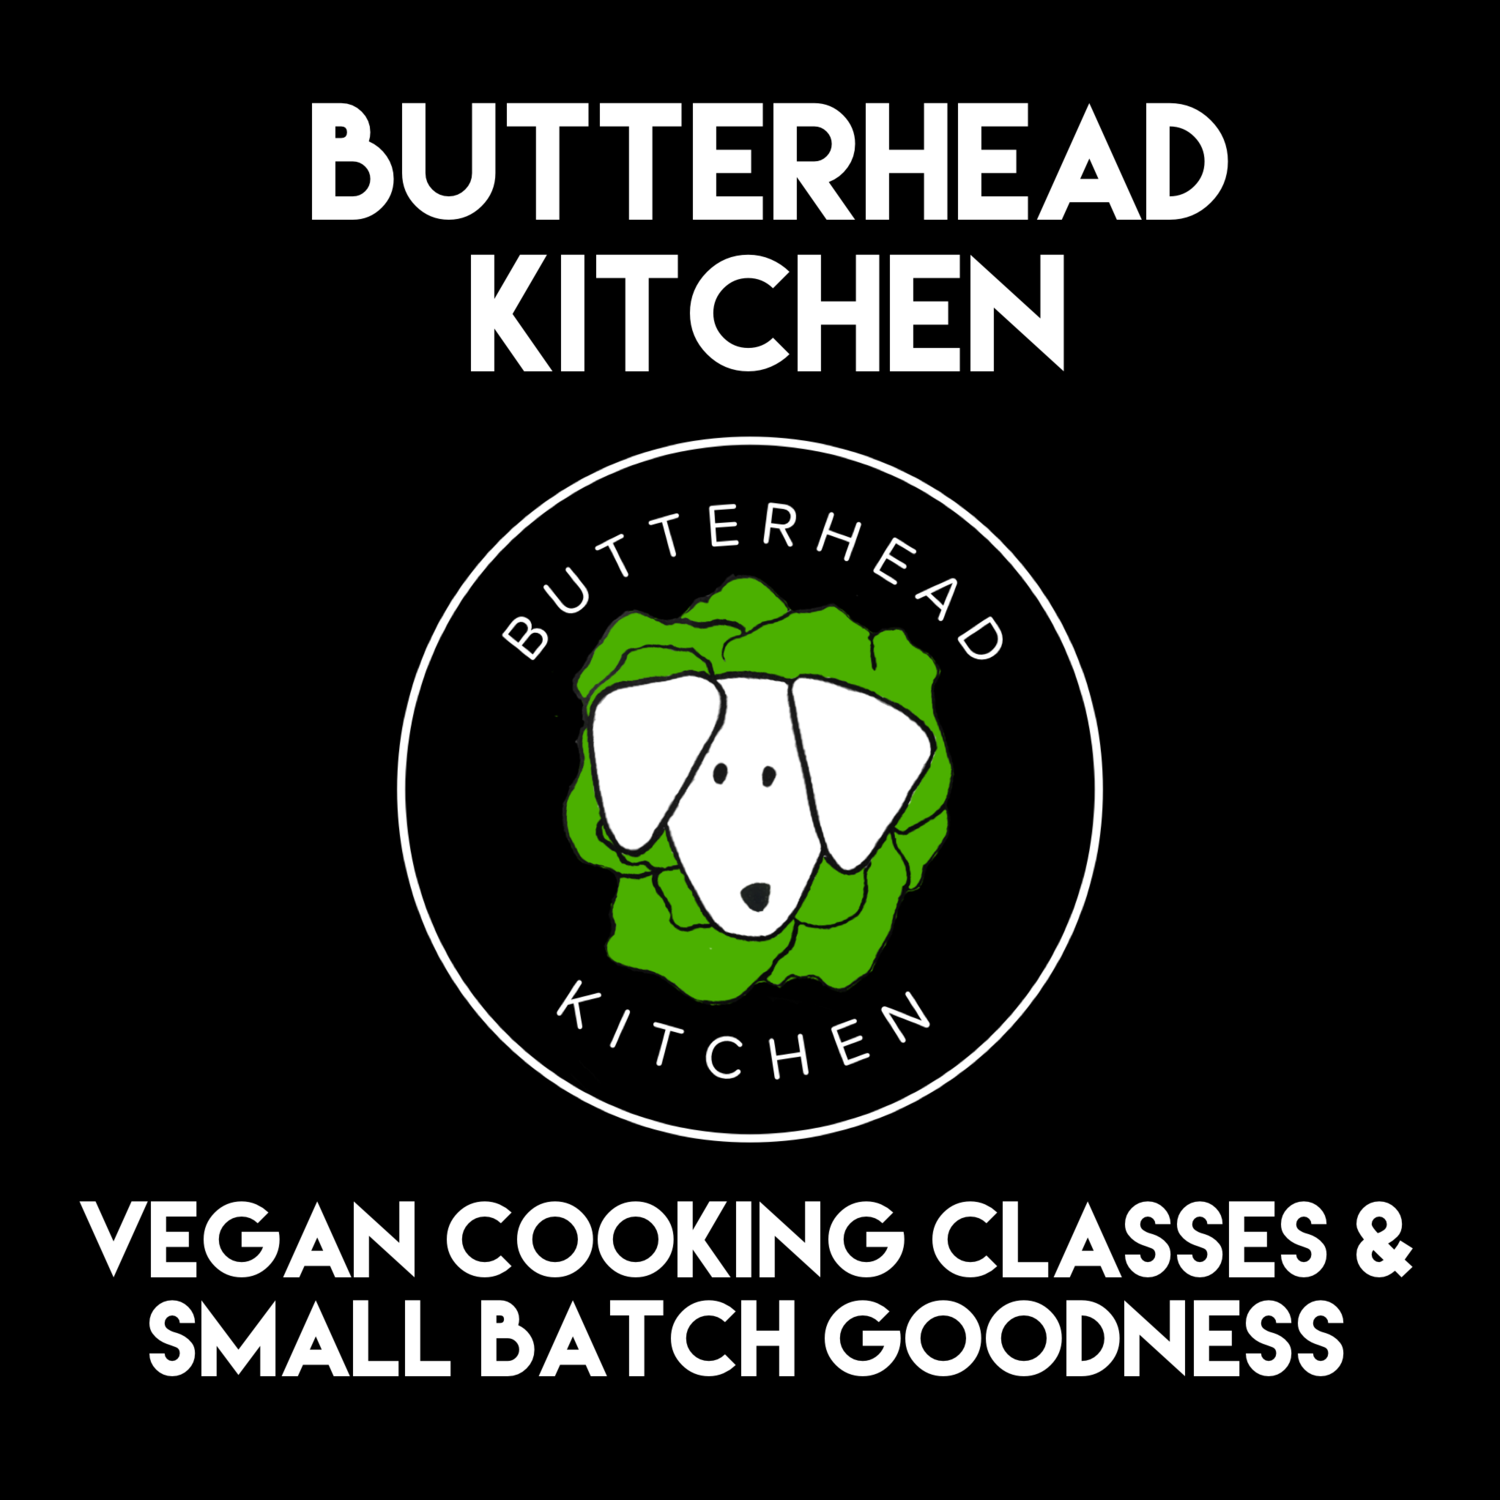 Butterhead Kitchen